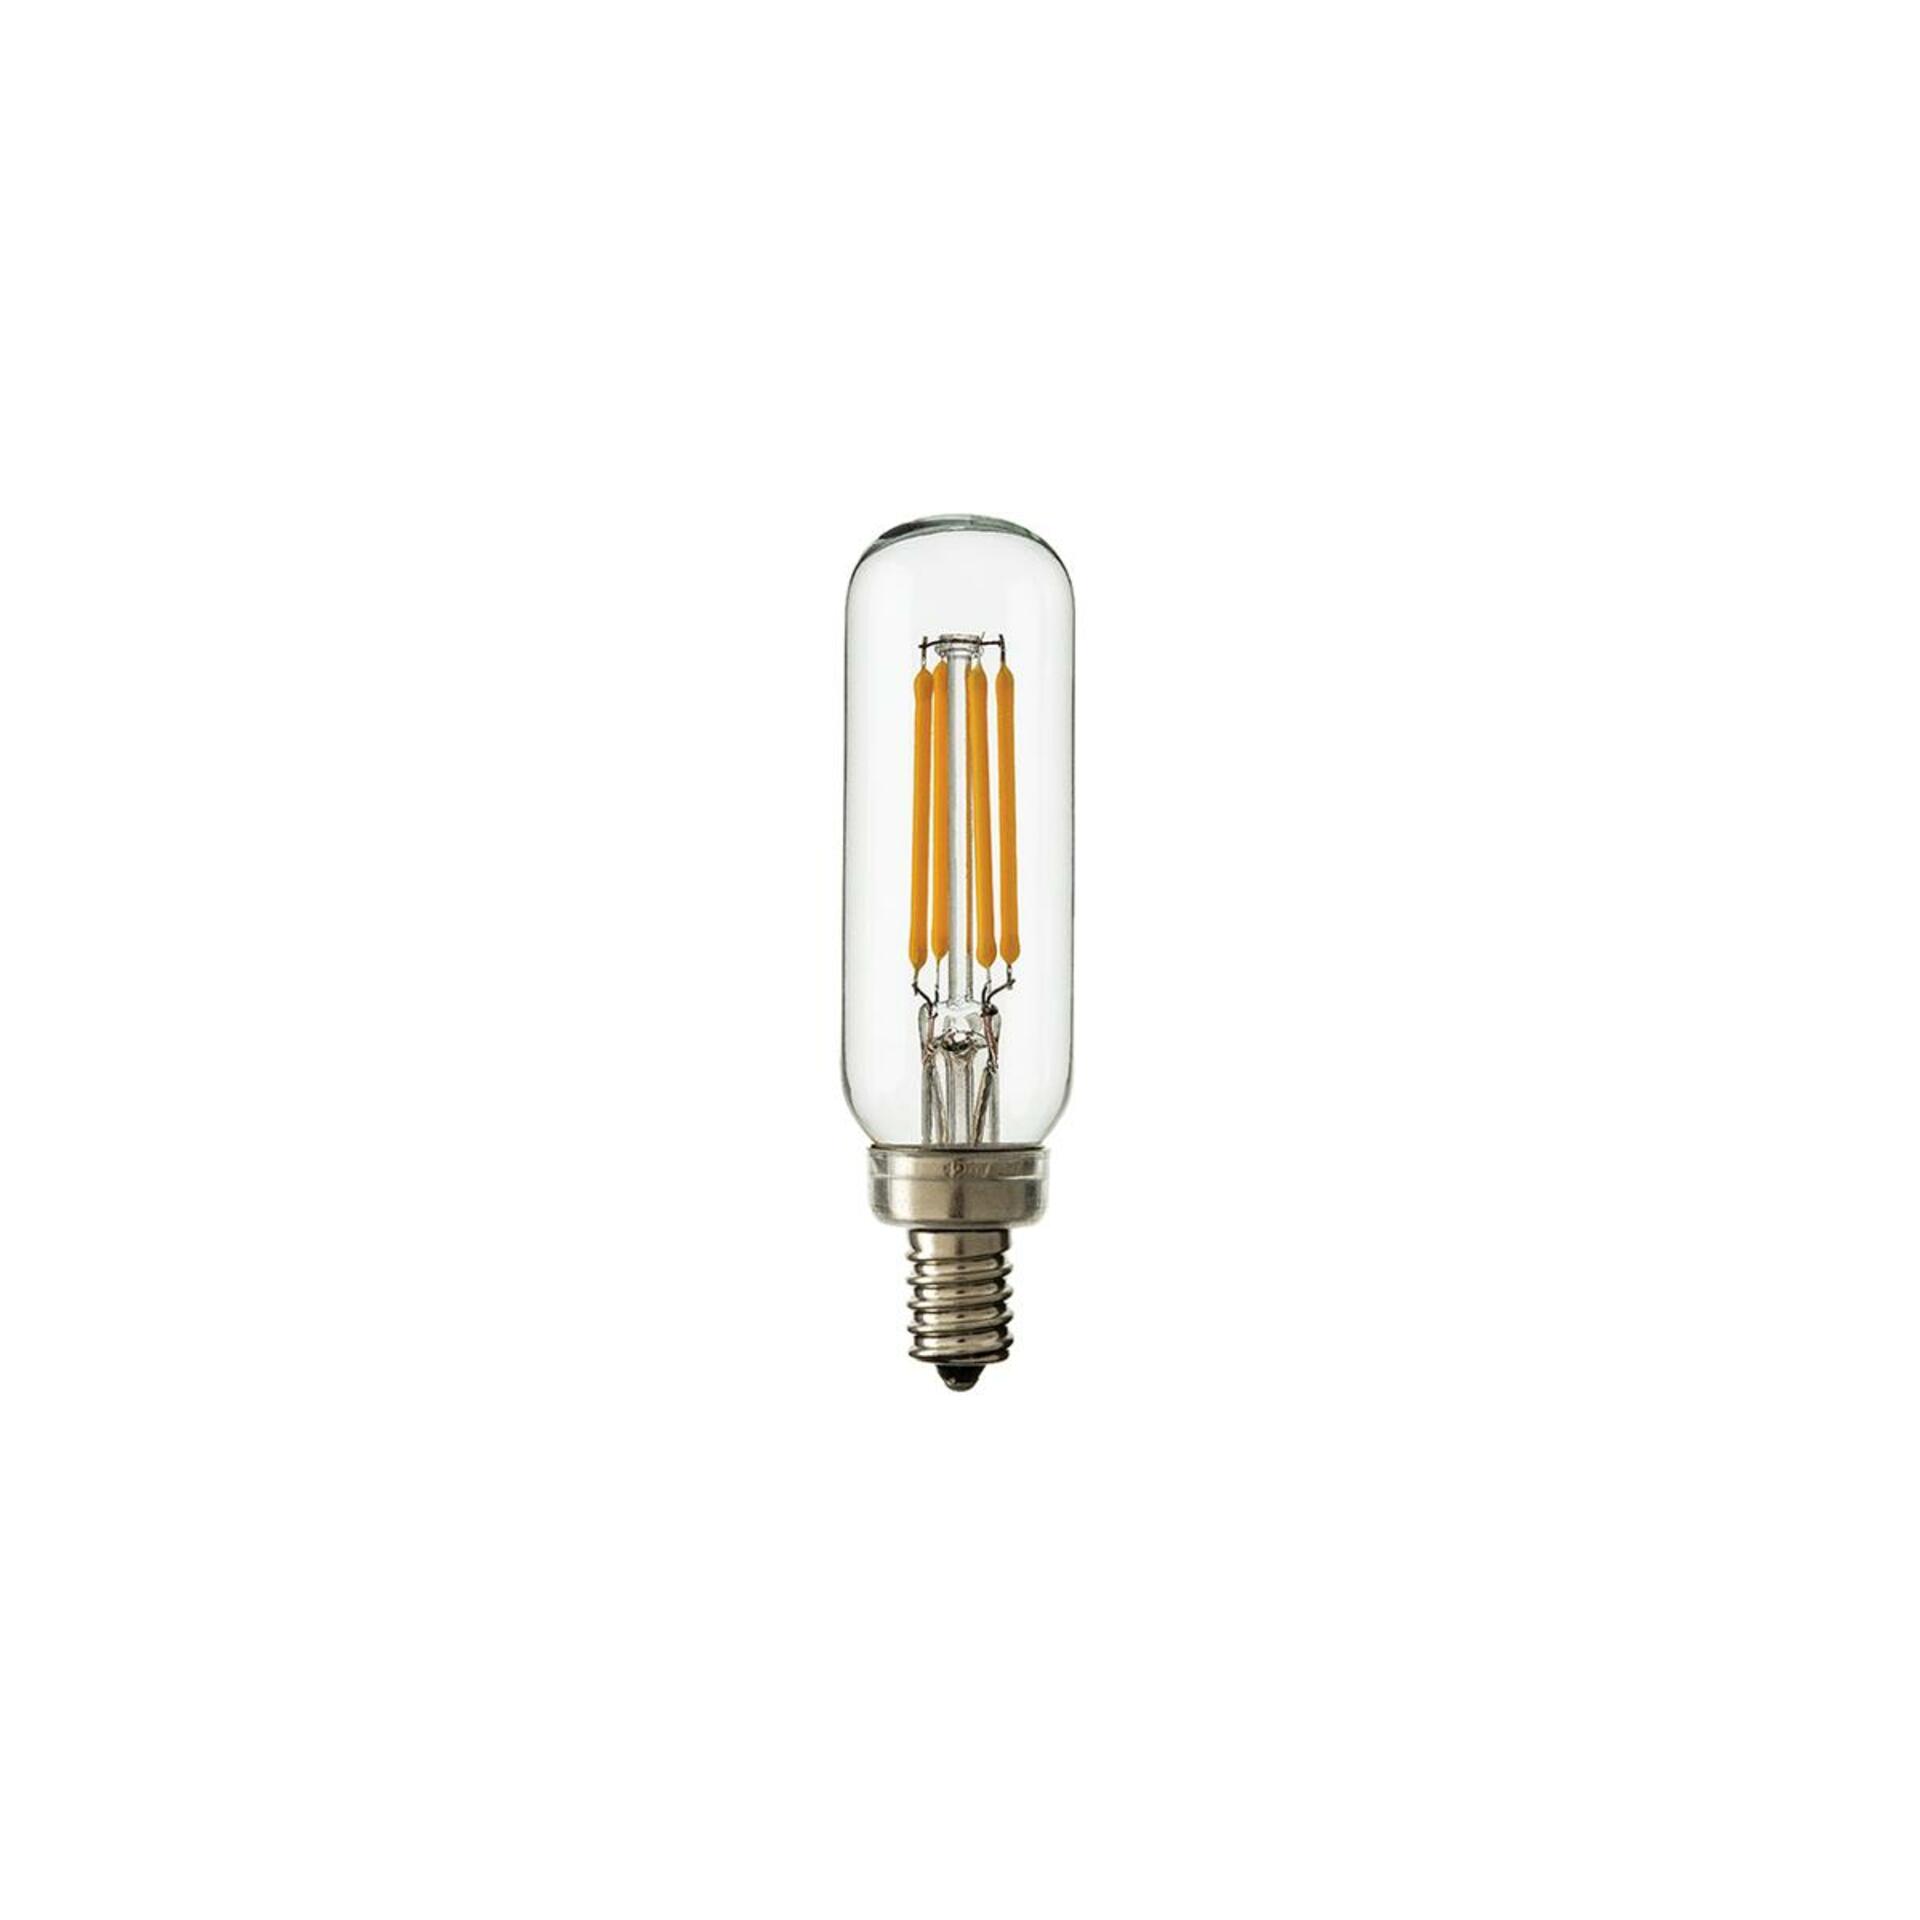 HUDSON VALLEY LED žárovka trubková 3W E14 230V čirá stmívatelná 4ks BLB-3W-T8-CE-4-PACK